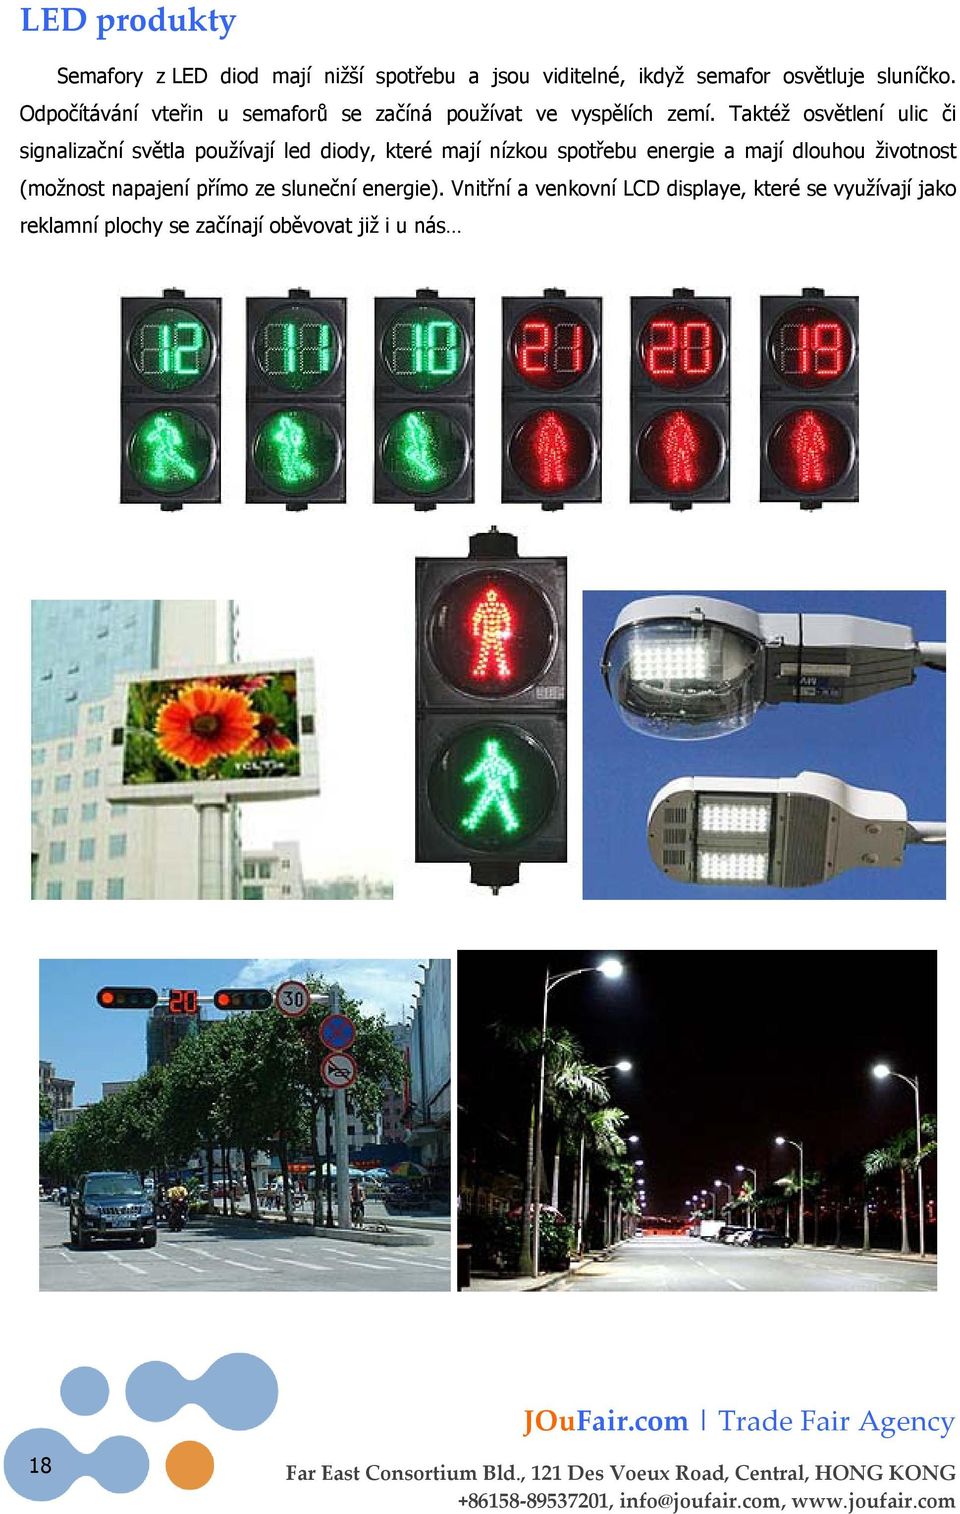 Taktéž osvětlení ulic či signalizační světla používají led diody, které mají nízkou spotřebu energie a mají